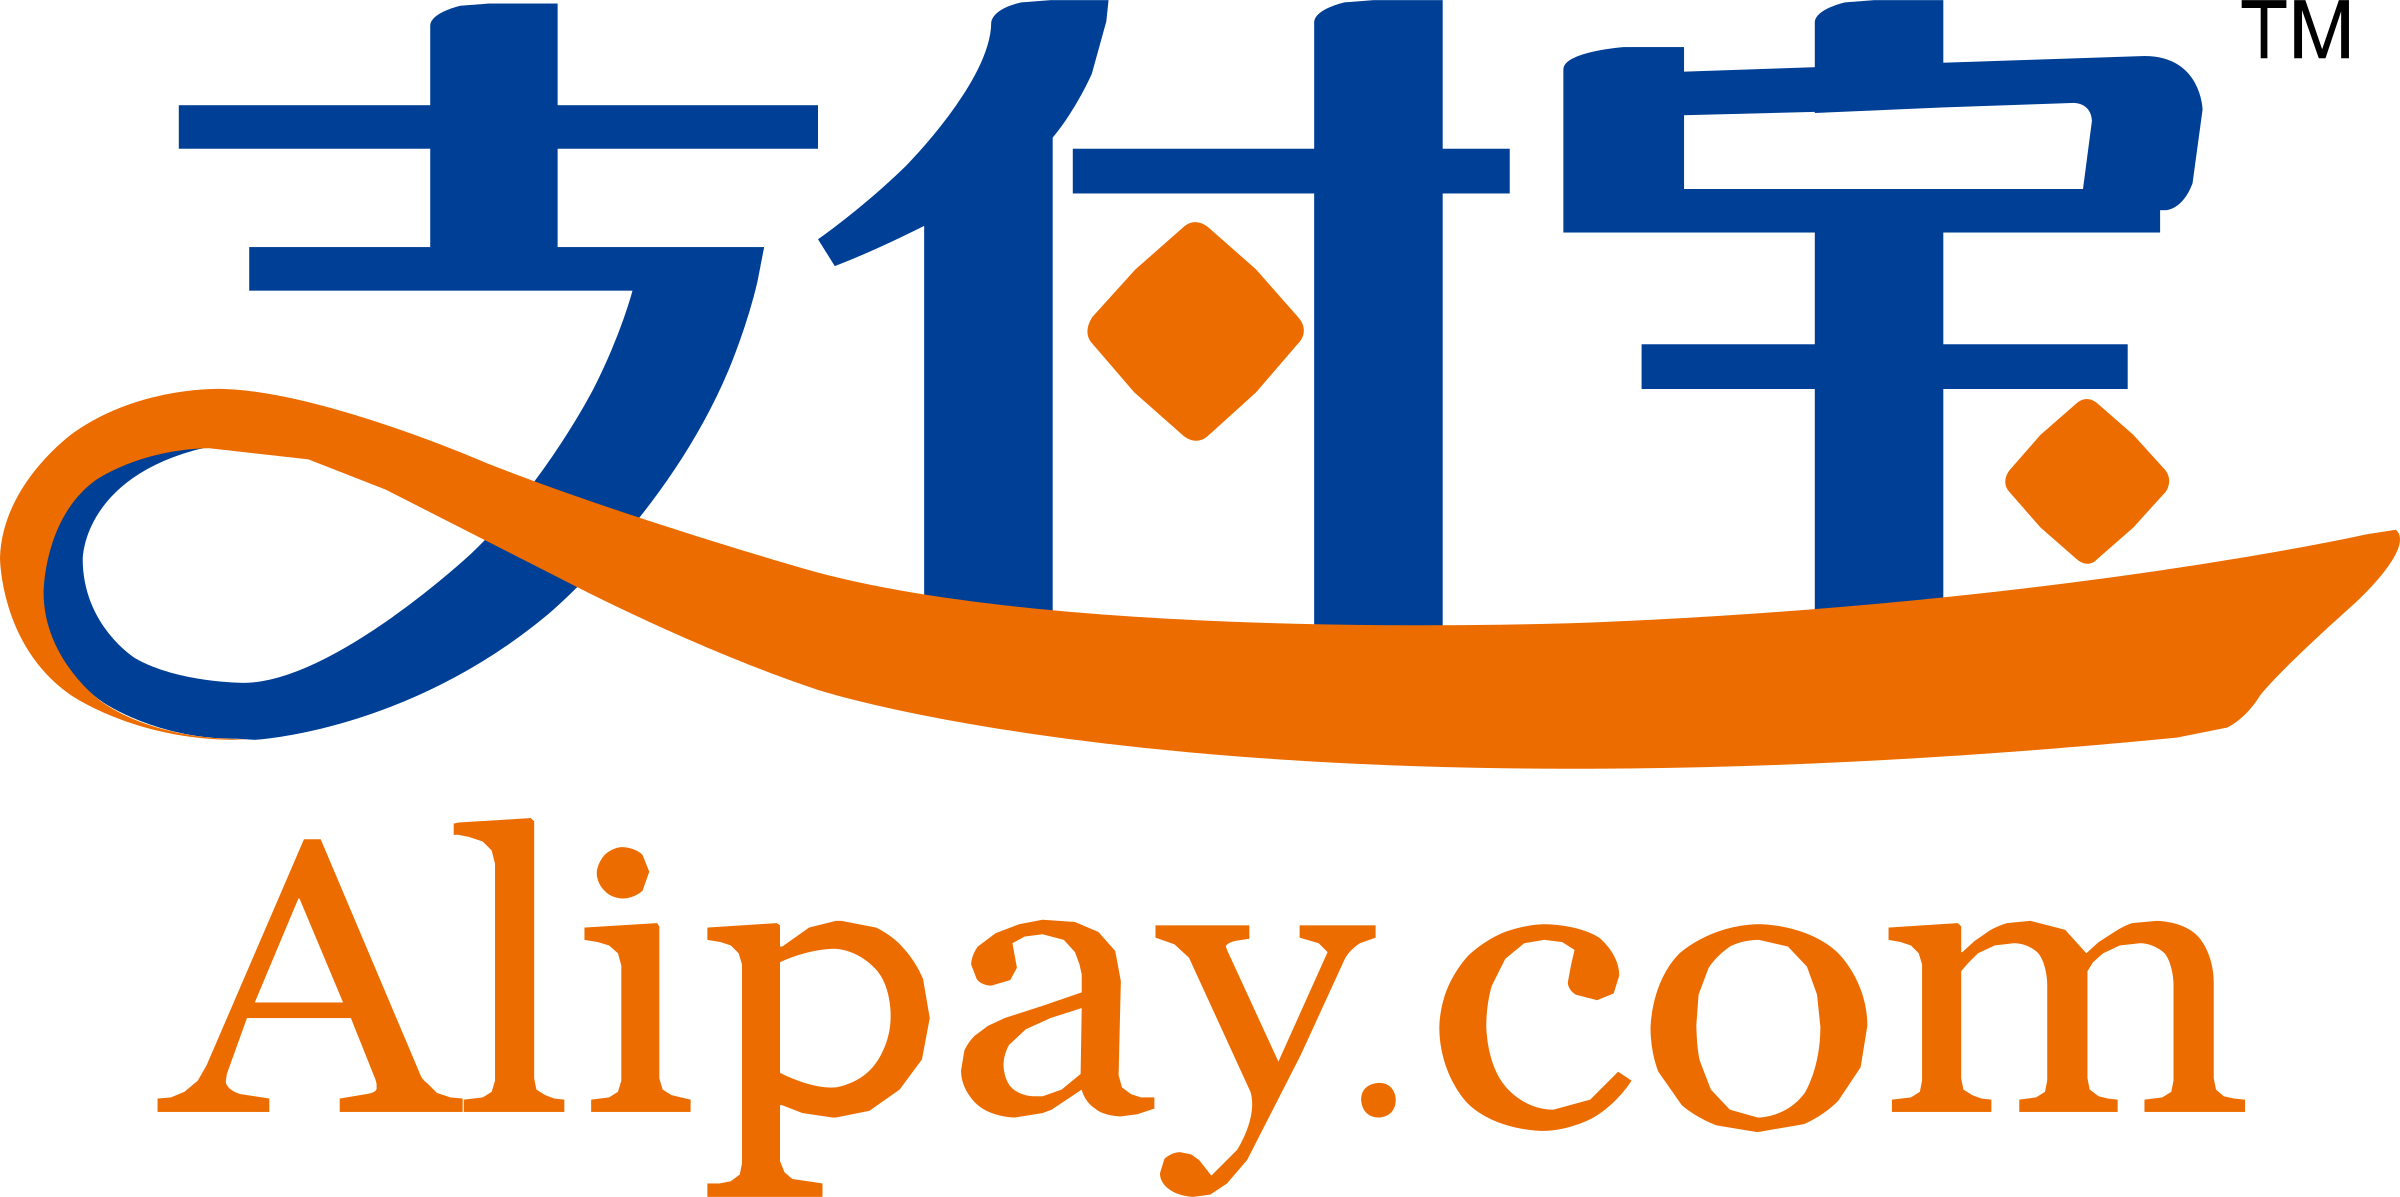 alipay. com